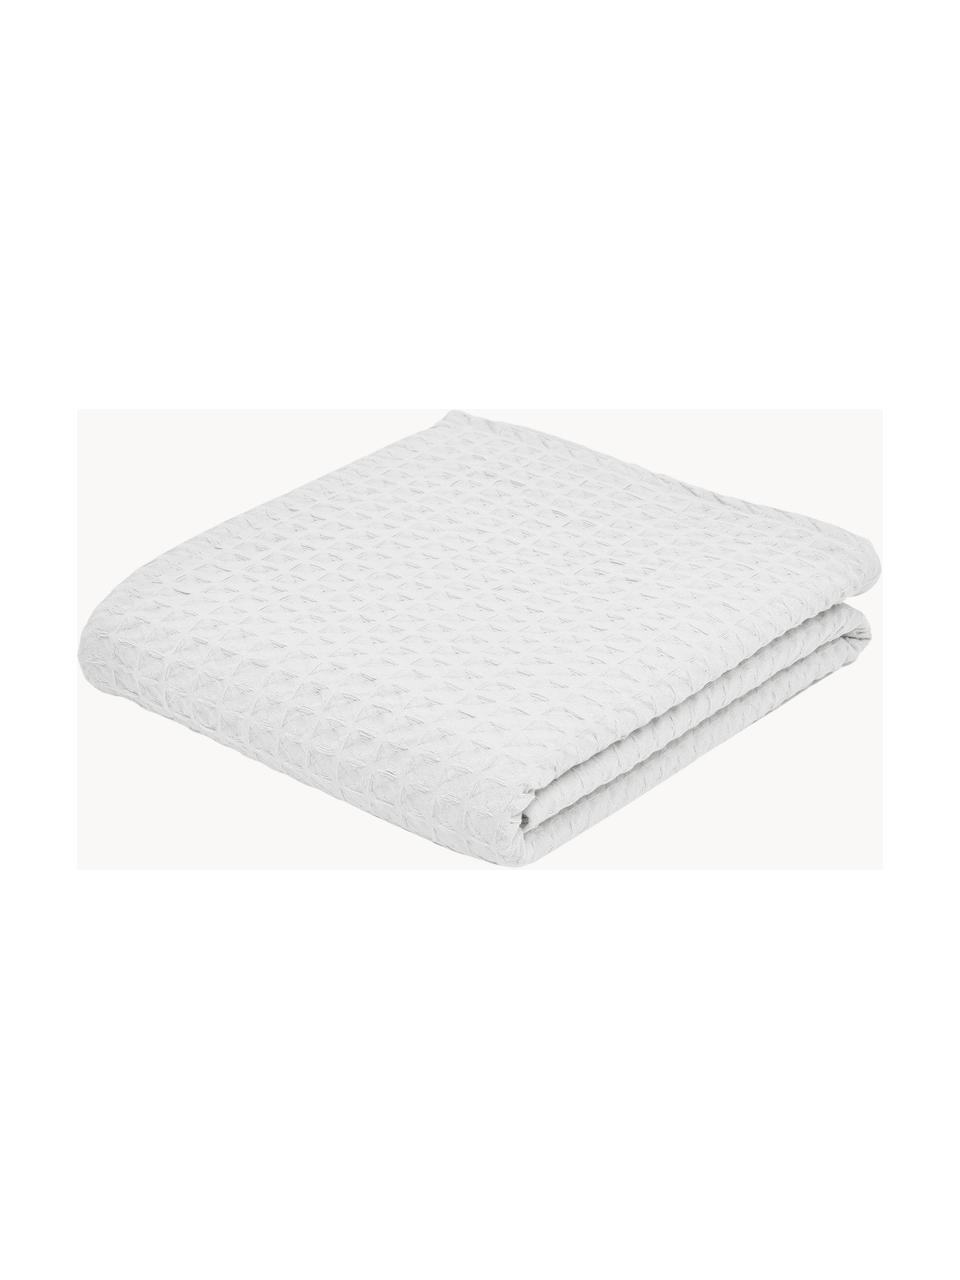 Colcha con estructura gofre Panal, 100% algodón, Blanco, An 180 x L 260 cm (para camas de 140 x 200 cm)